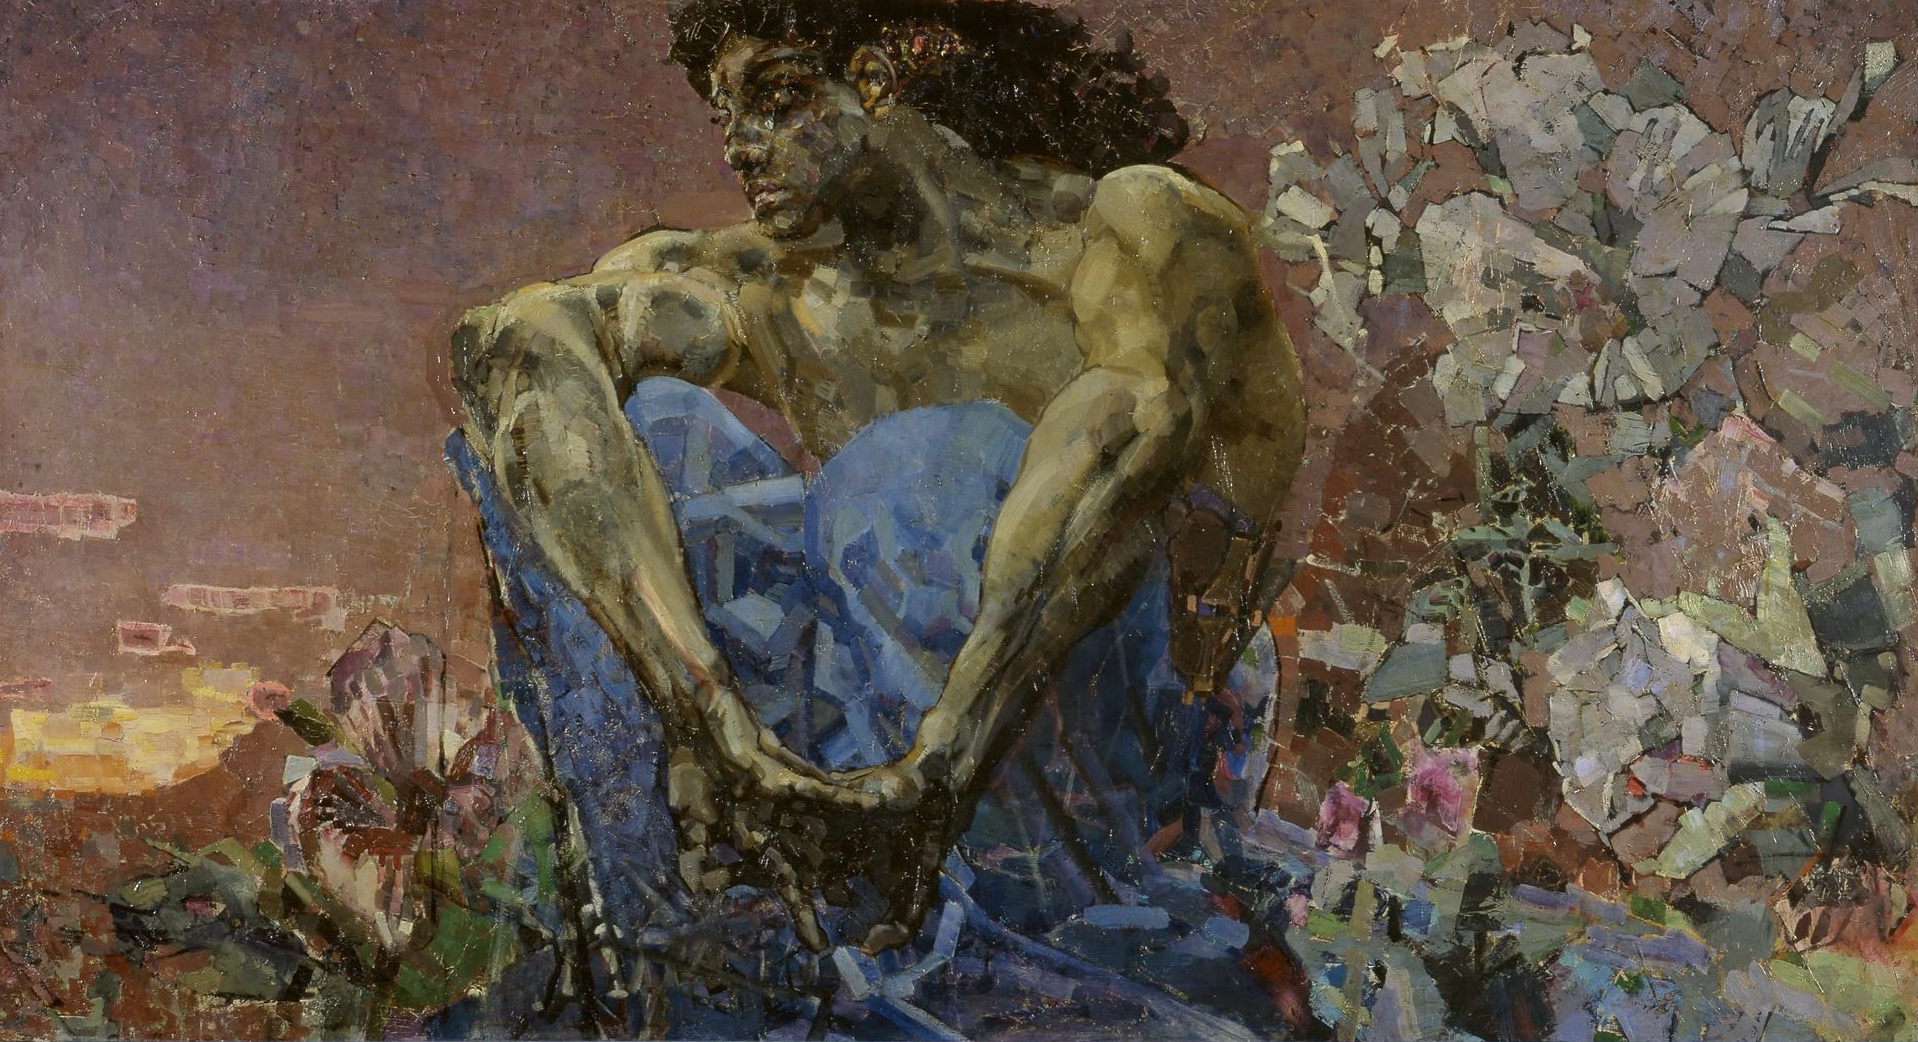 Demon siedzący w ogrodzie by Mikhail Vrubel - 1890 - 114 x 211 cm 